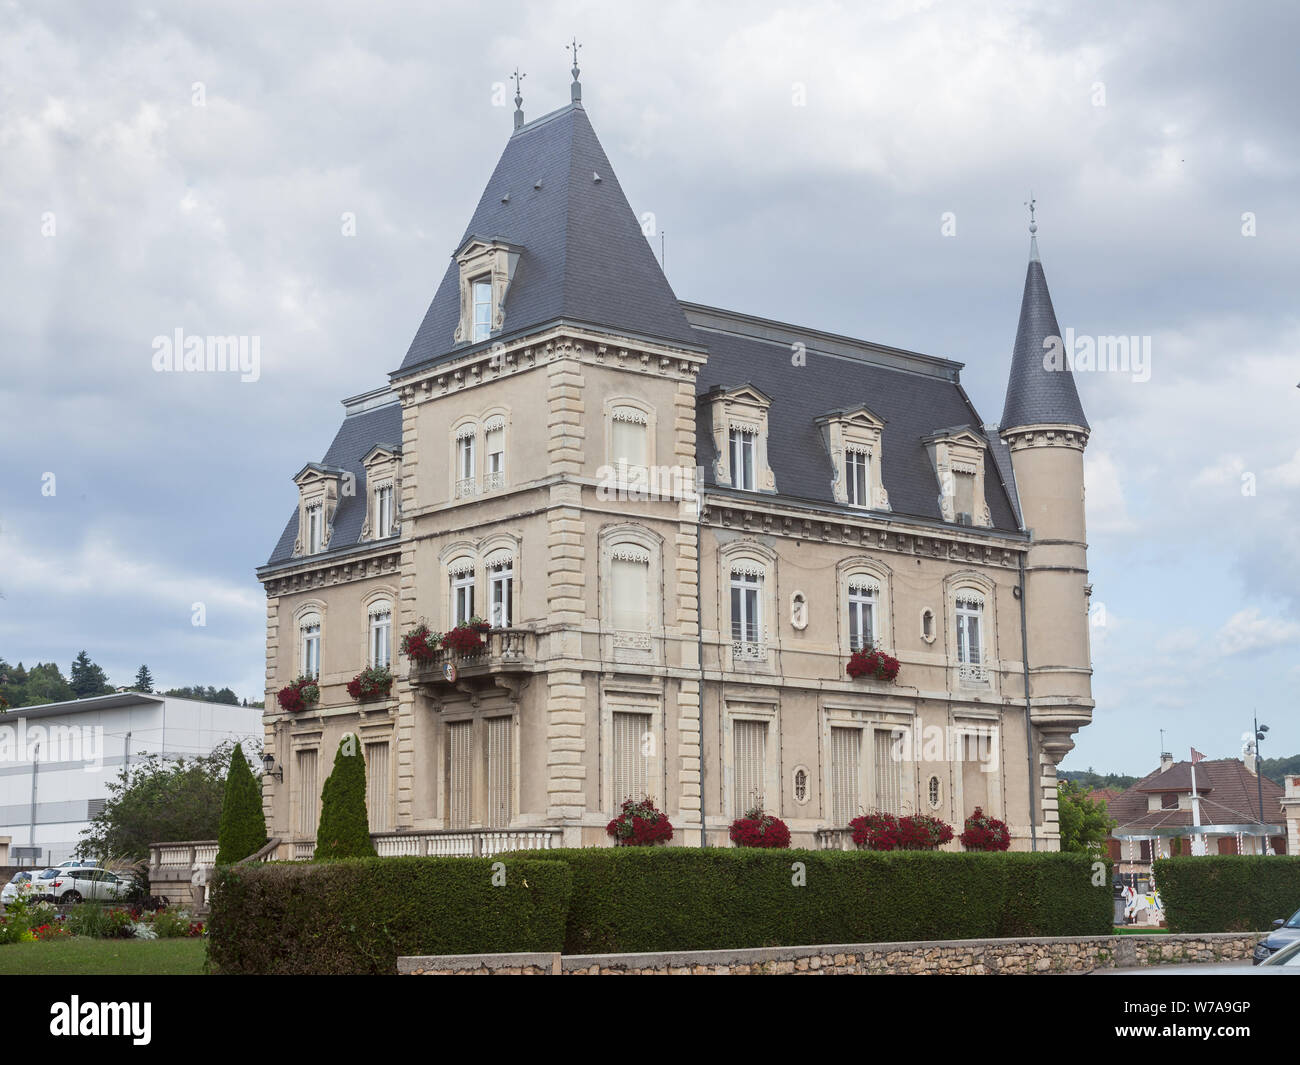 BOURGOIN-JALLIEU, FRANCE - 15 juillet 2019 : La Mairie de Bourgoin Jallieu, également appelé Hôtel de Ville ou mairie, un château de style manoir du xixe ce Banque D'Images